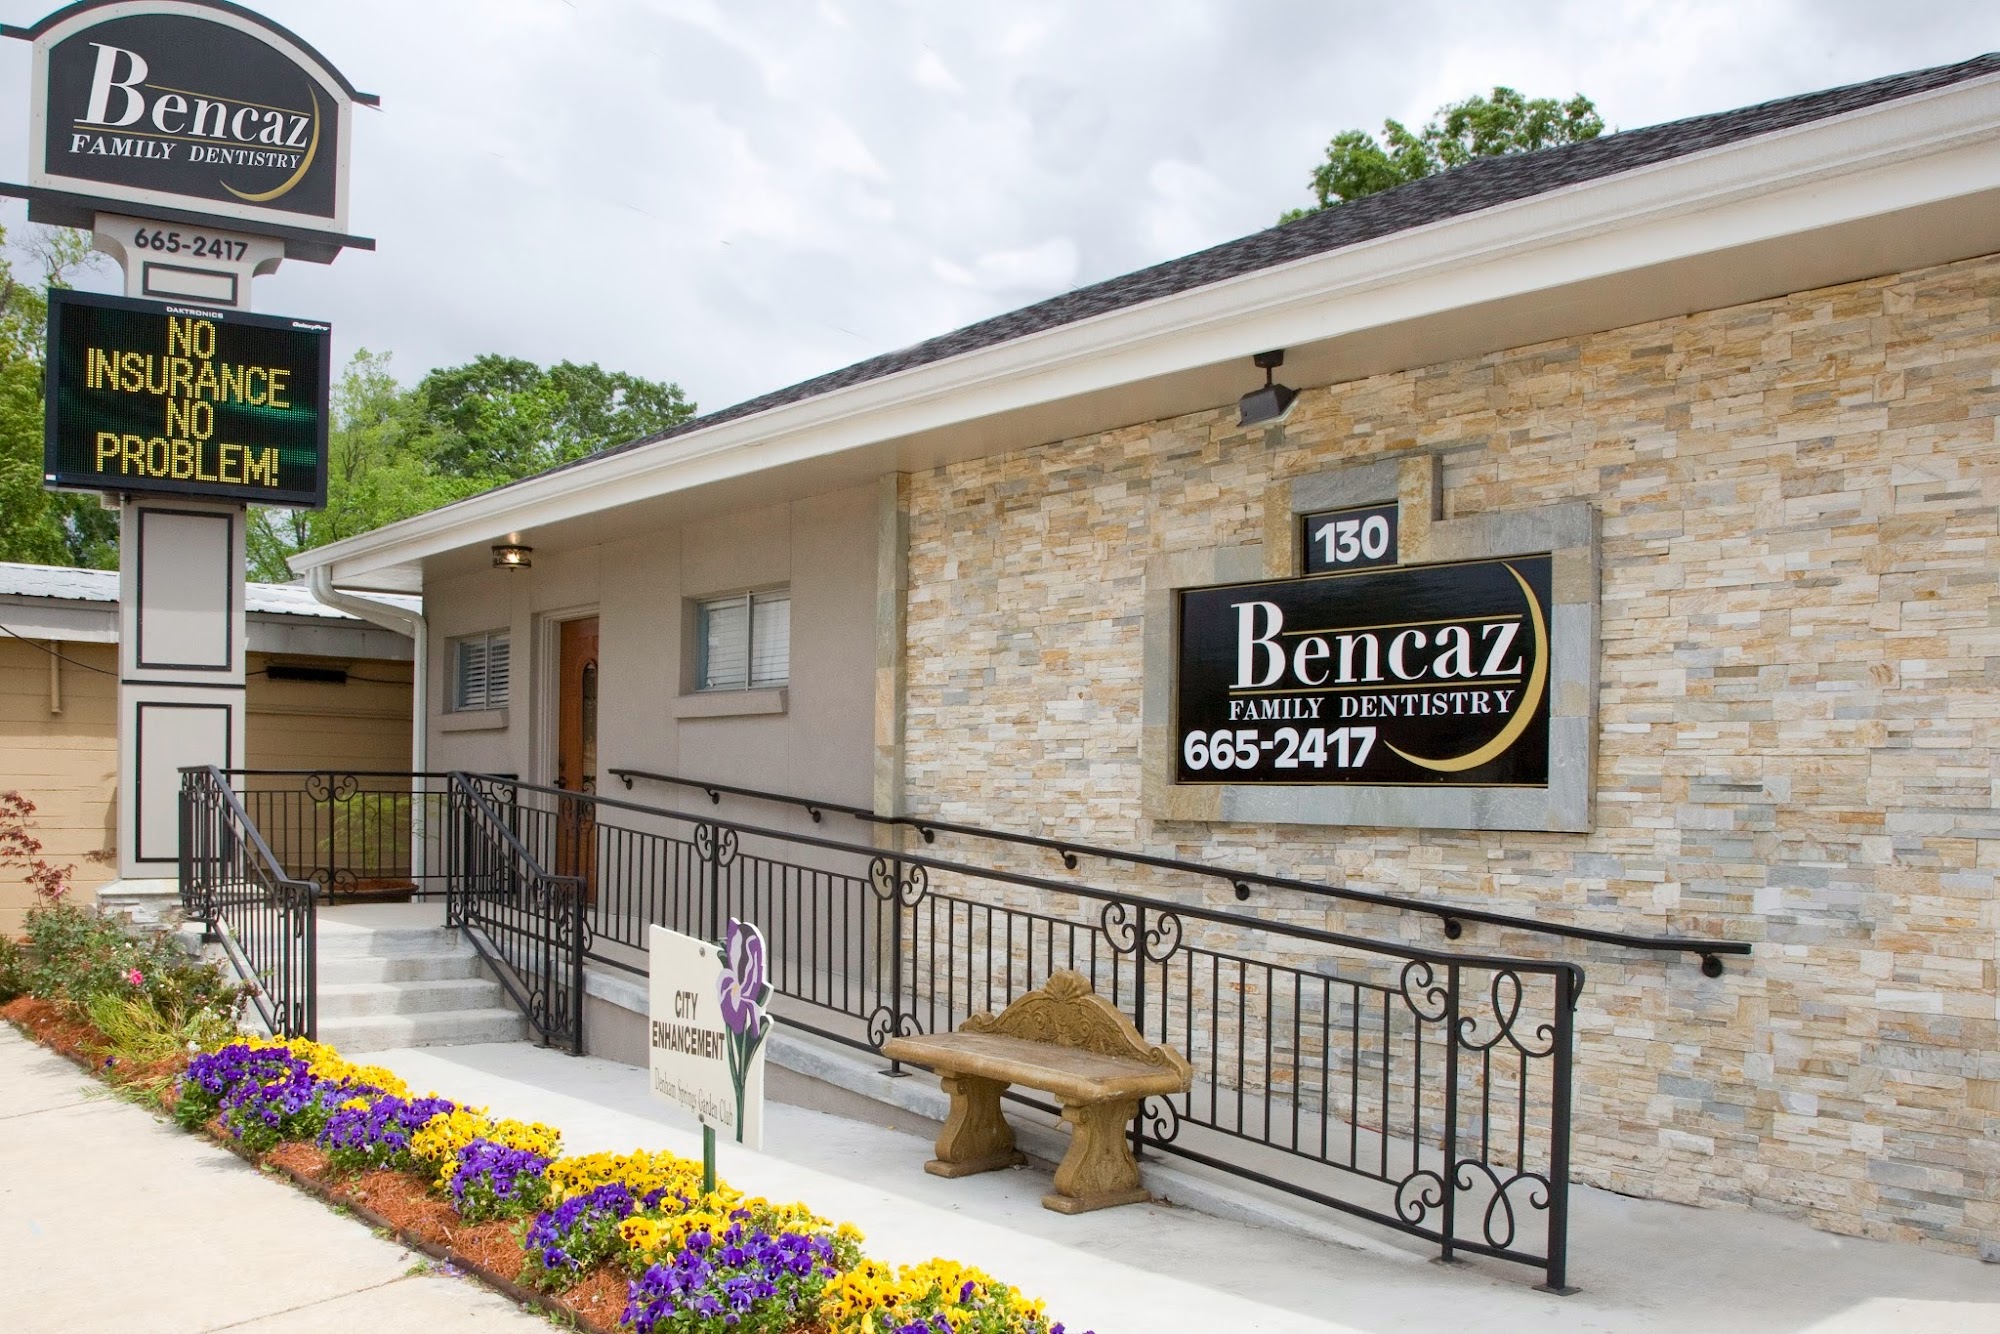 Bencaz Family Dentistry - Denham Springs Dentist Office